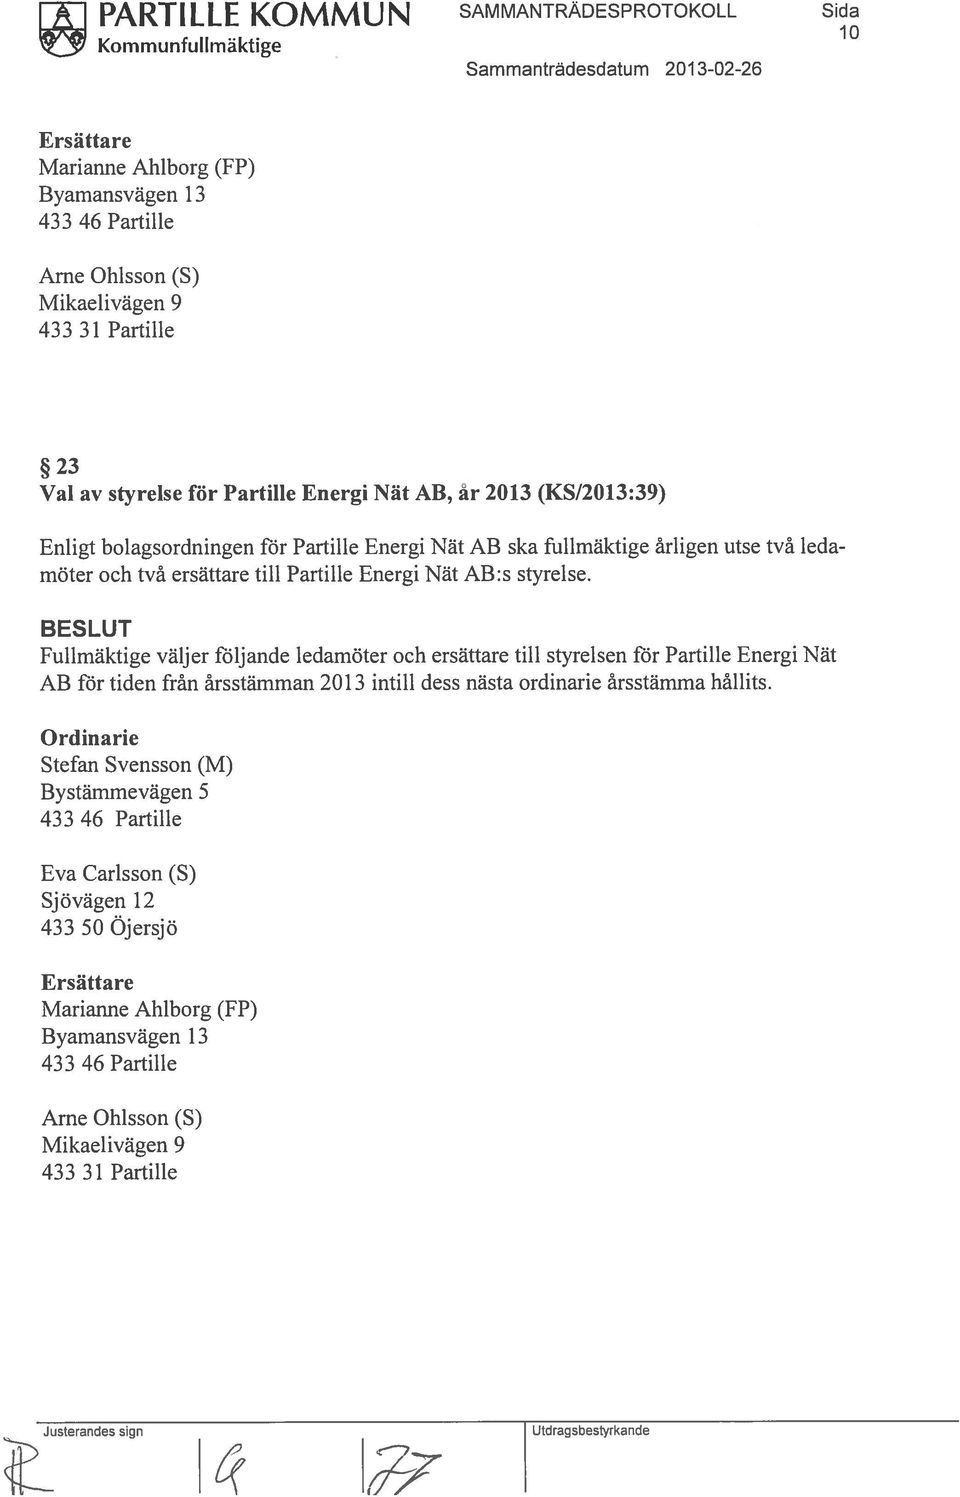 Fullmäktige väljer följande ledamöter och ersättare till styrelsen för Partille Energi Nät AB för tiden från årsstämman 2013 intill dess nästa ordinarie årsstämma hållits.